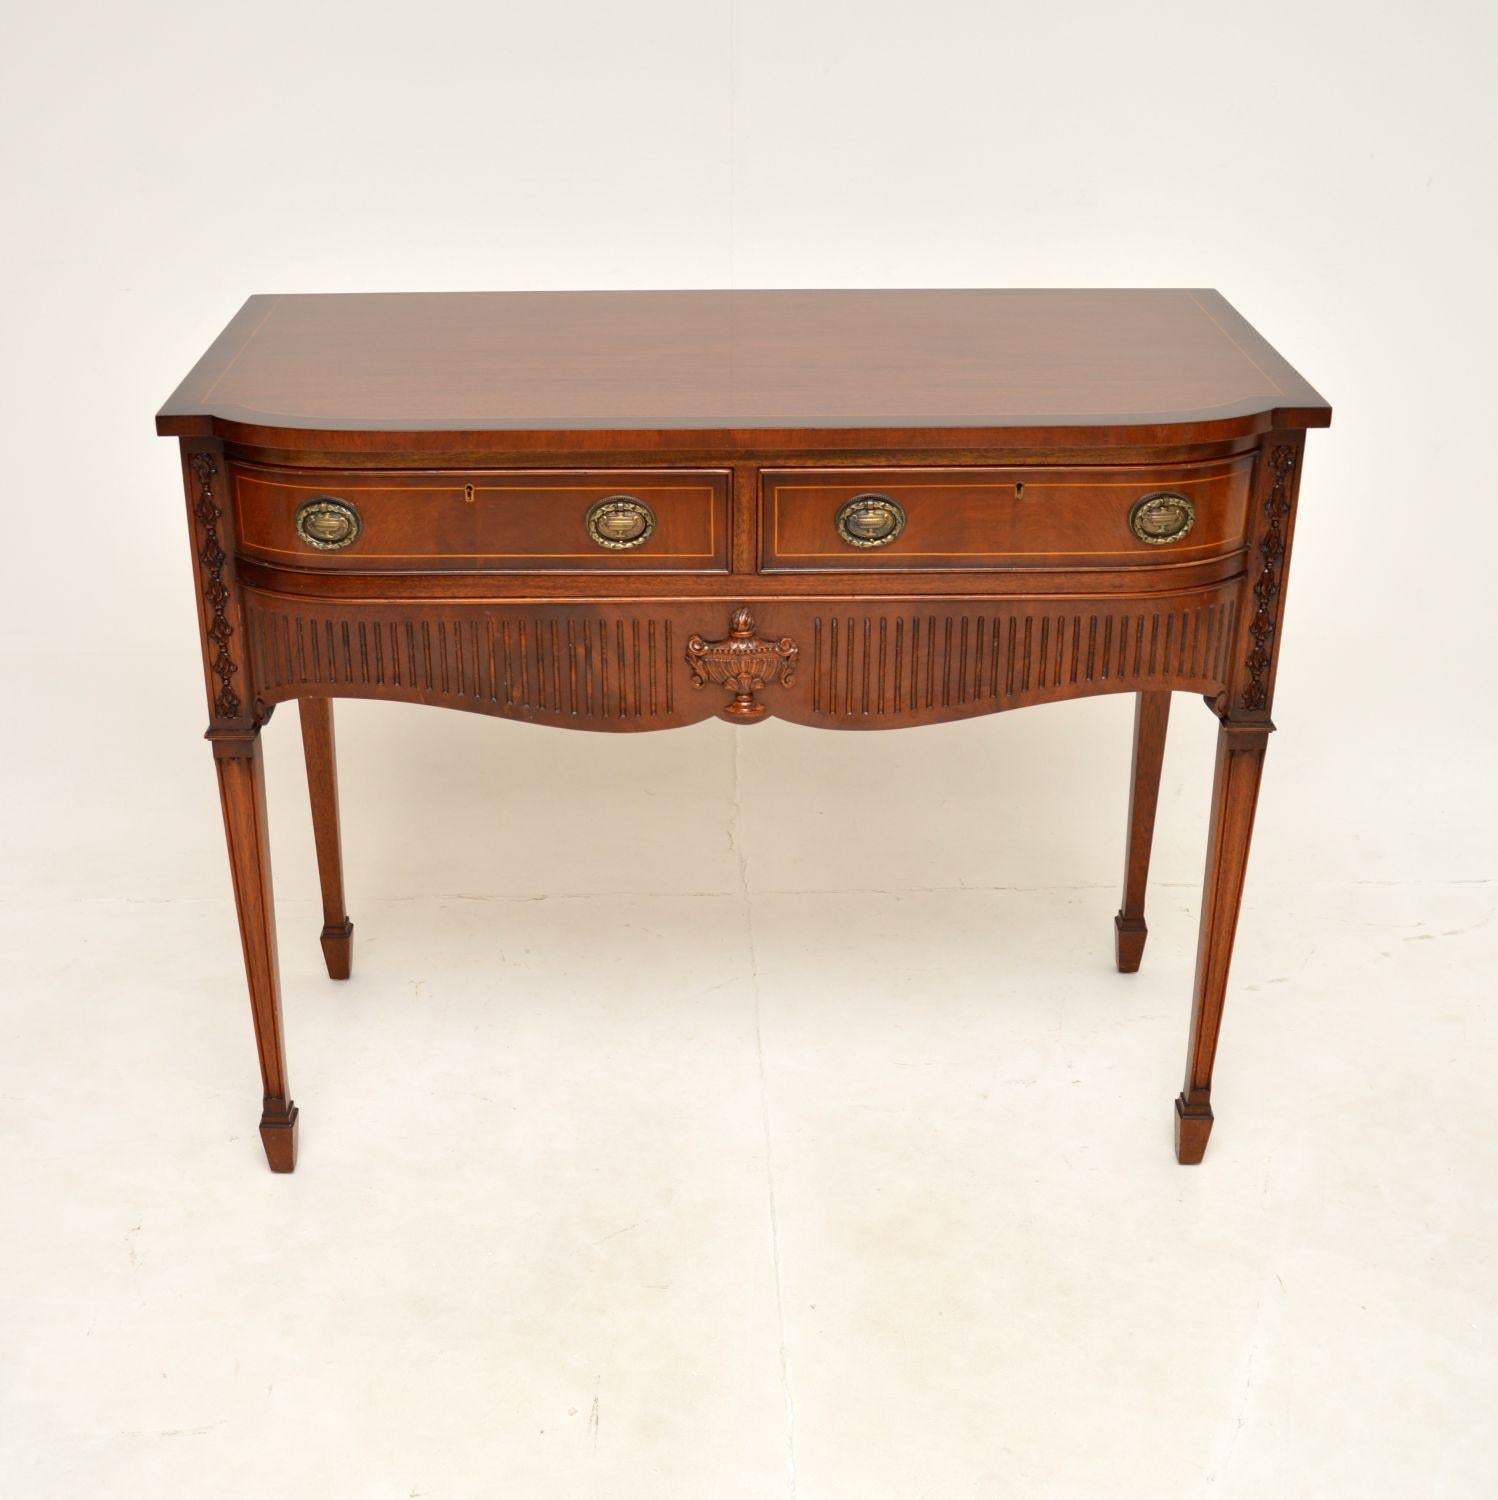 Eine schöne antike Intarsien Konsole / Server-Tabelle in der Regency-Stil. Es wurde in England hergestellt und stammt aus den 1950er Jahren.

Die Qualität ist hervorragend, er hat eine praktische Größe und verfügt über drei großzügige Schubladen.